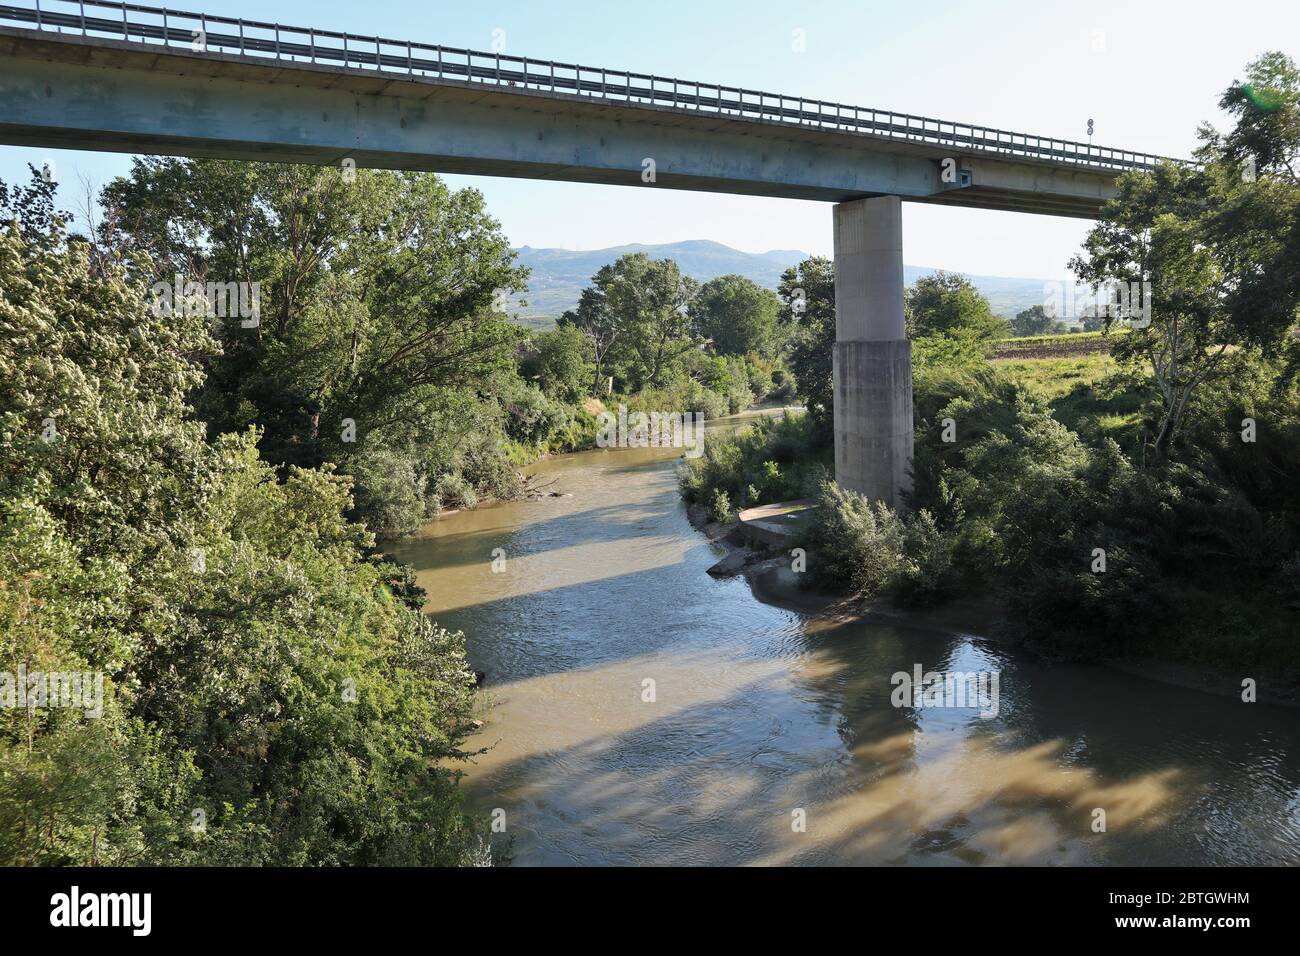 Solopaca - Viadotto sul fiume Calore Stock Photo